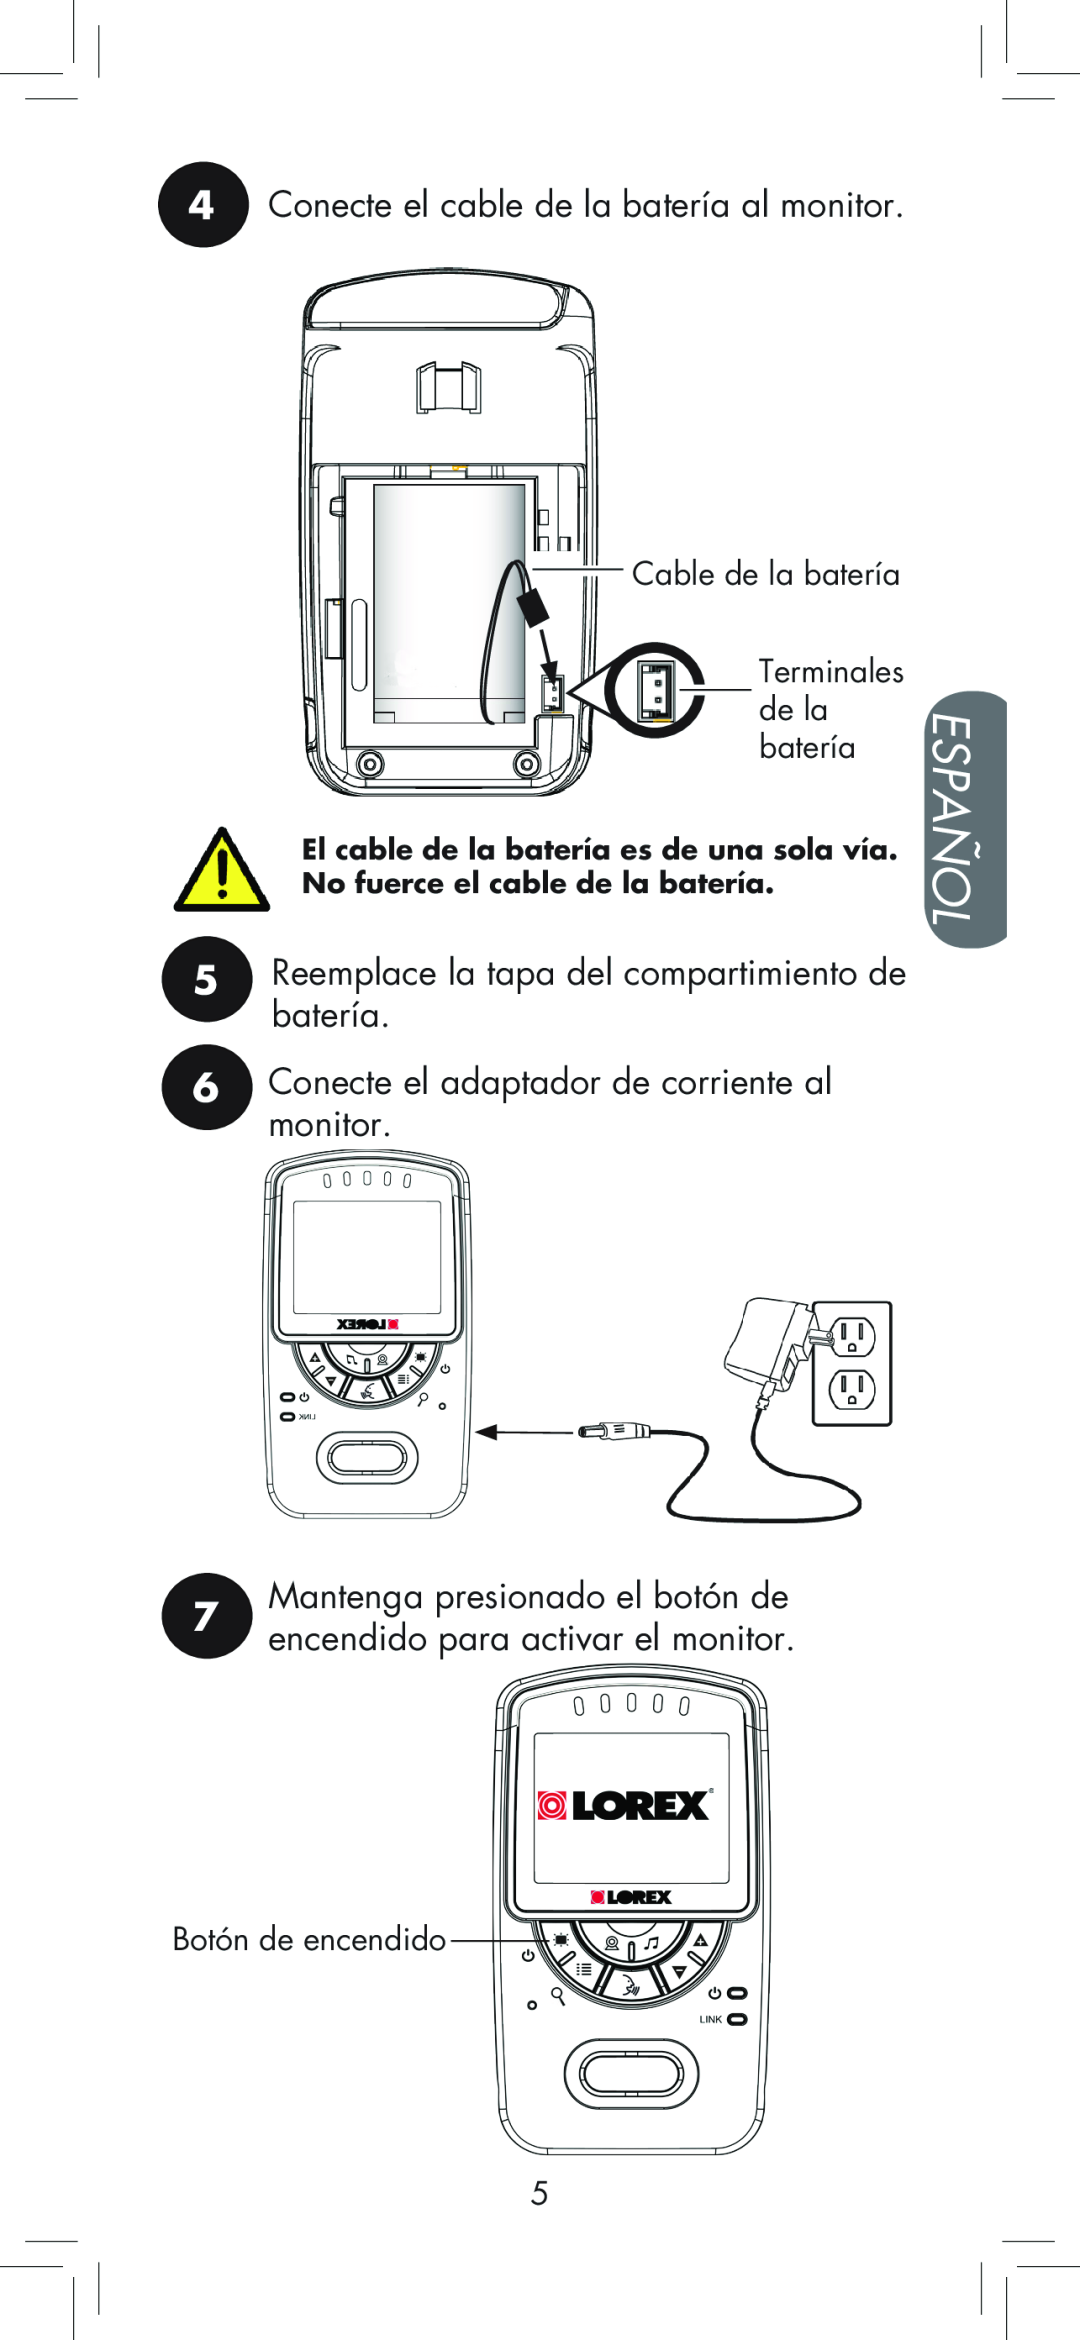 LOREX Technology BB2411 Español, 4Conecte el cable de la batería al monitor, 6Conecte el adaptador de corriente al monitor 